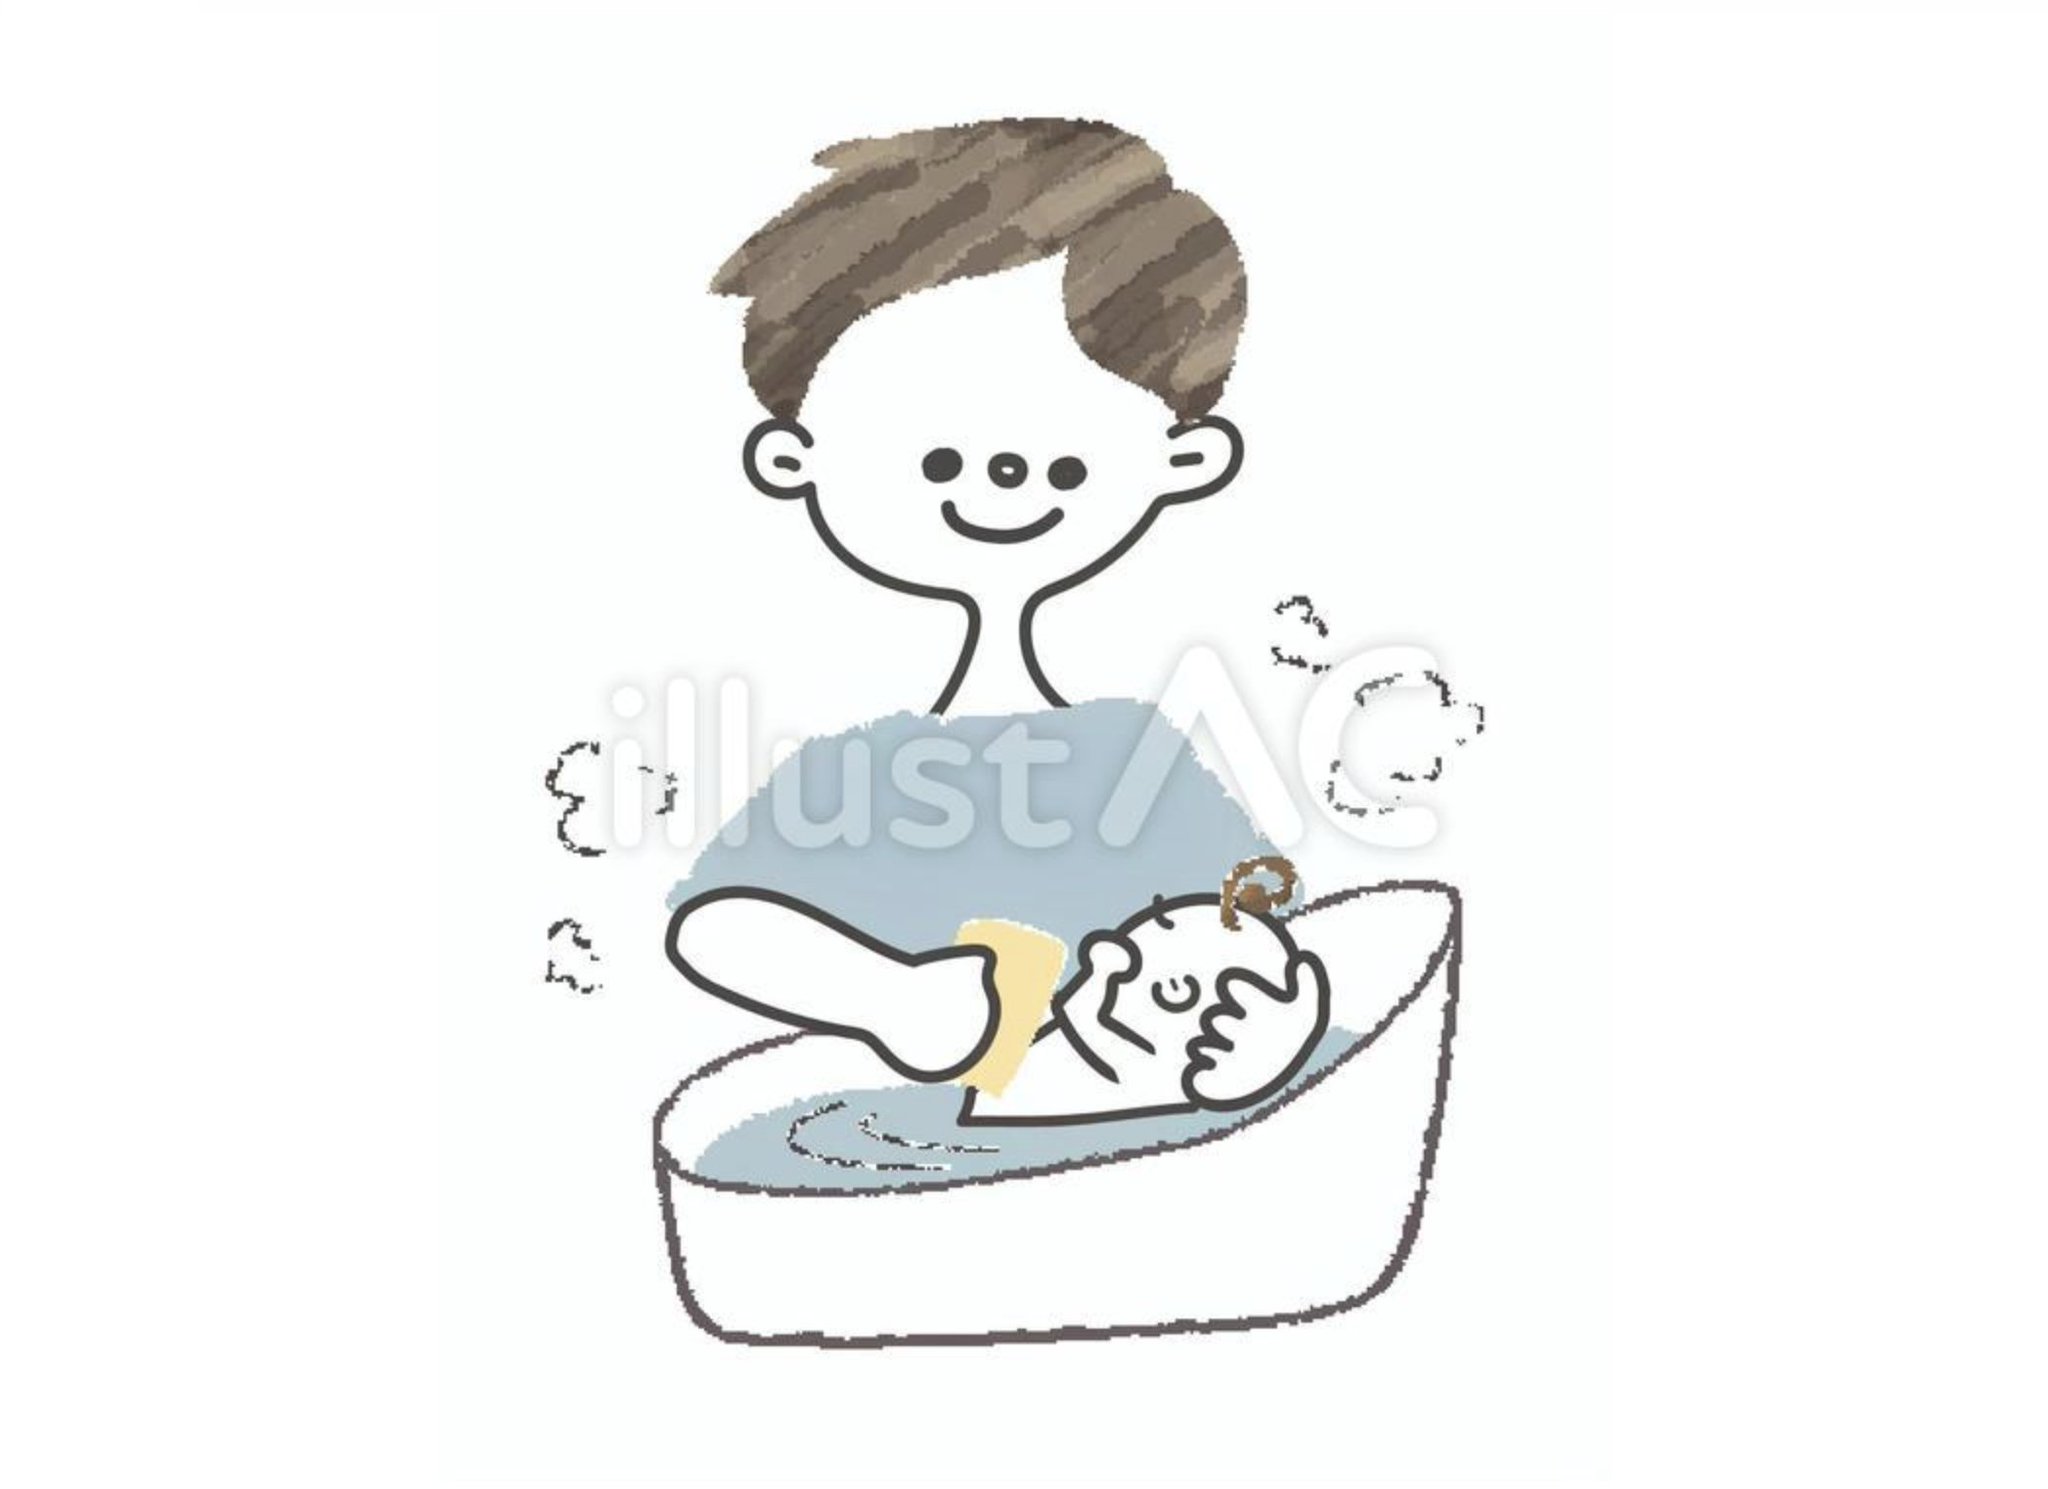 Acワークス株式会社 新着イラストからおすすめをピックアップ 赤ちゃんの沐浴をする男性 手書き風の優しいタッチでいい感じ おむつ替えなどシリーズもあって使いやすそうです T Co Nttvcx46rp イラストac 新着イラスト 無料 フリー素材